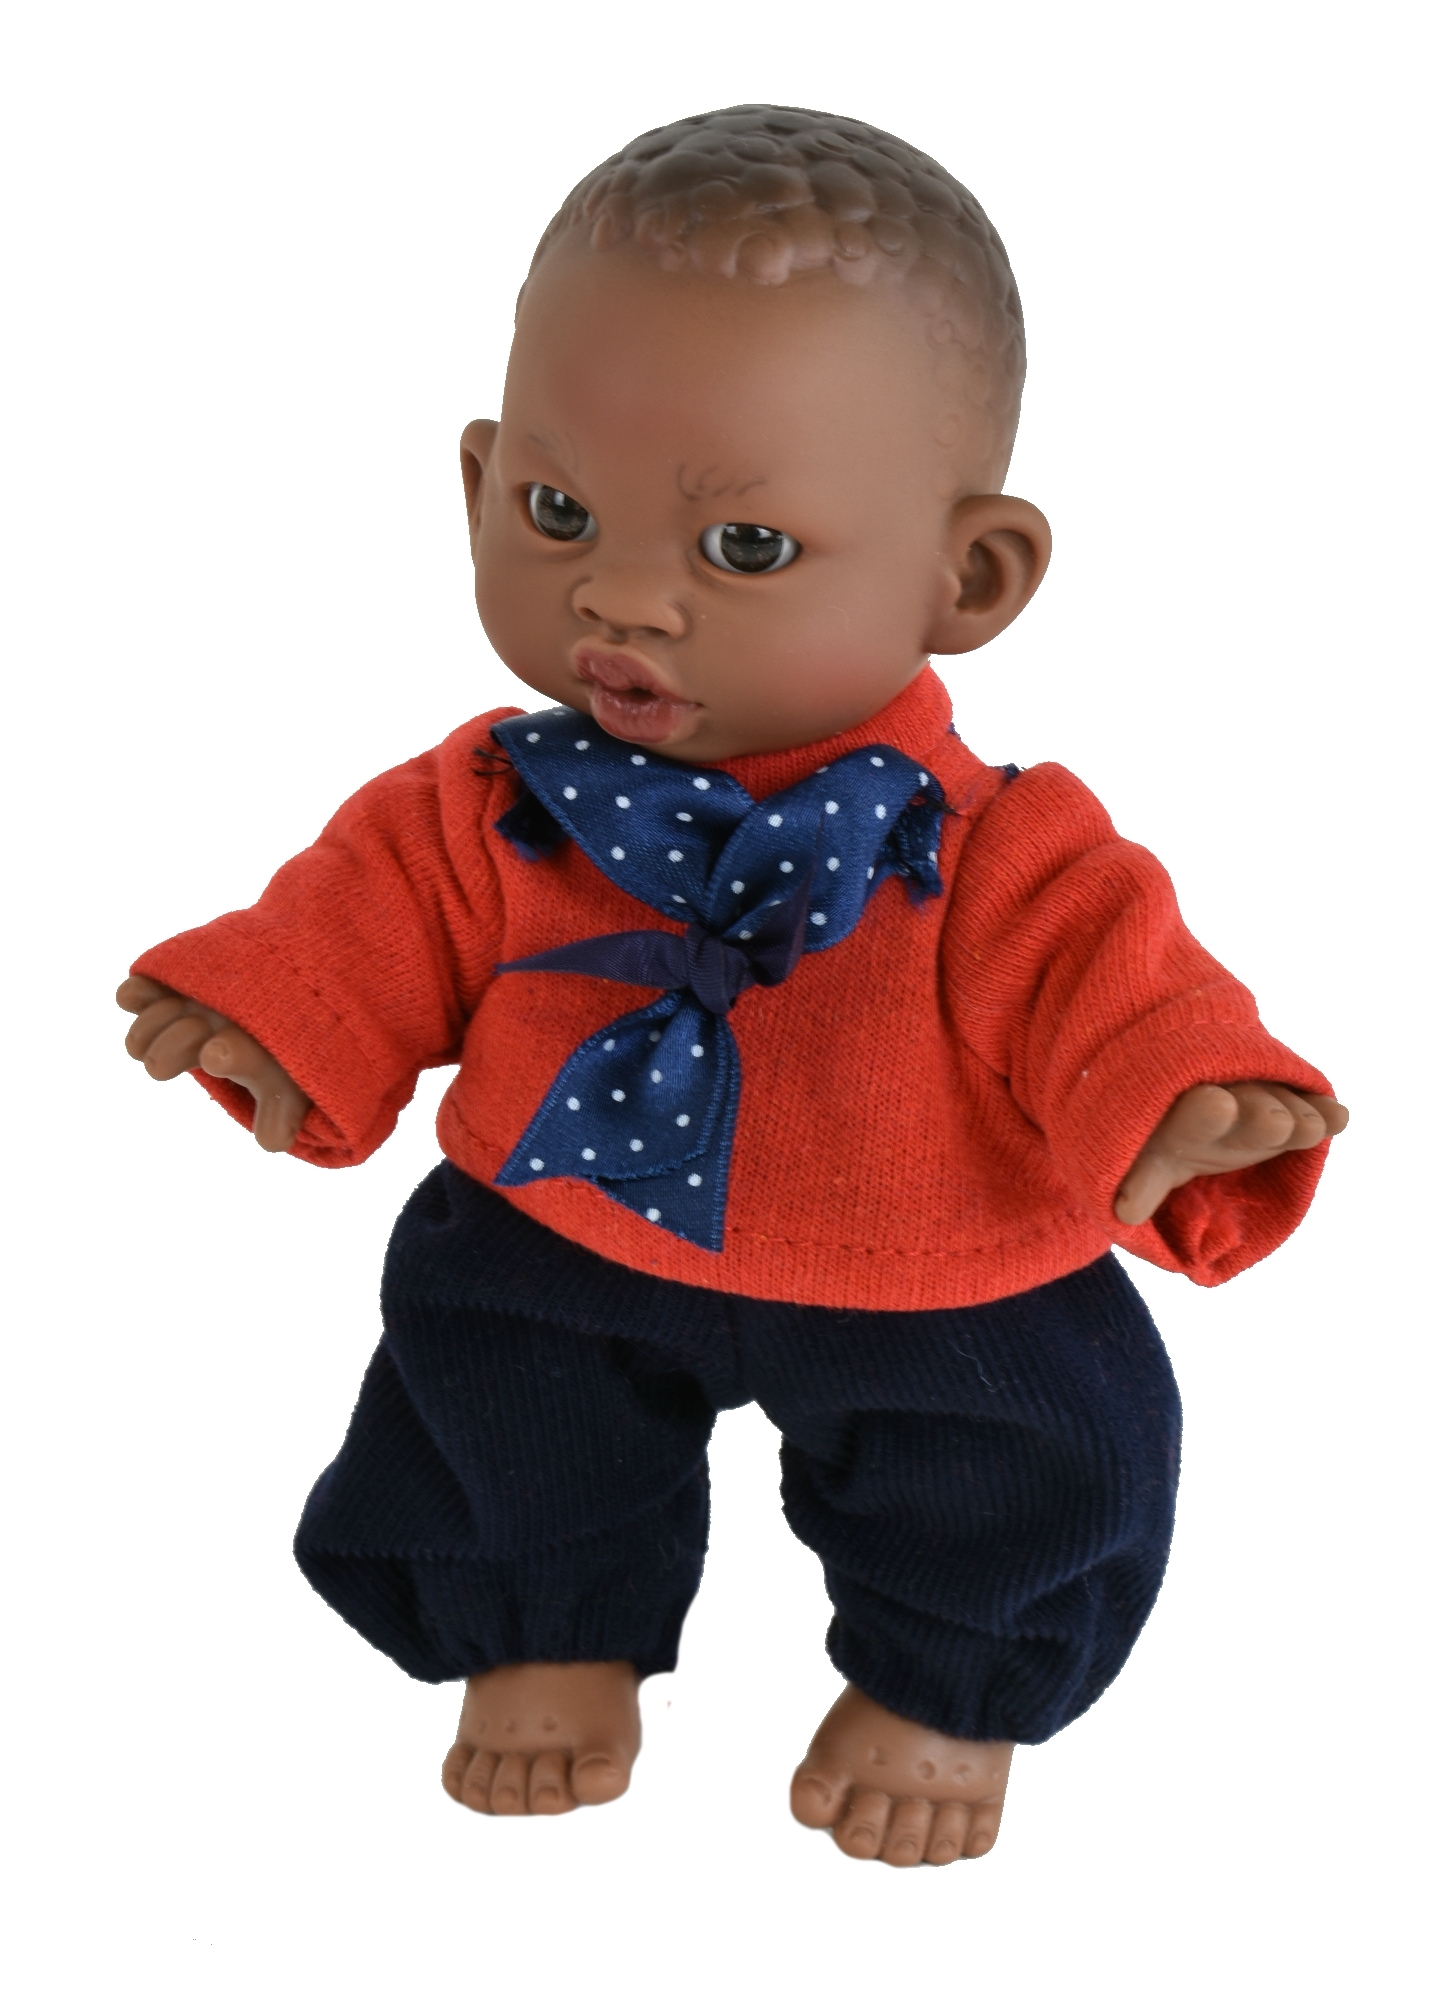 Кукла  Lamagik Джестито Инфант 18 см, в красной кофте с бантом, темнокожий 10000U кукла джестито поранился мальчик в бежевом комбинезоне и голубой кофте 38 см